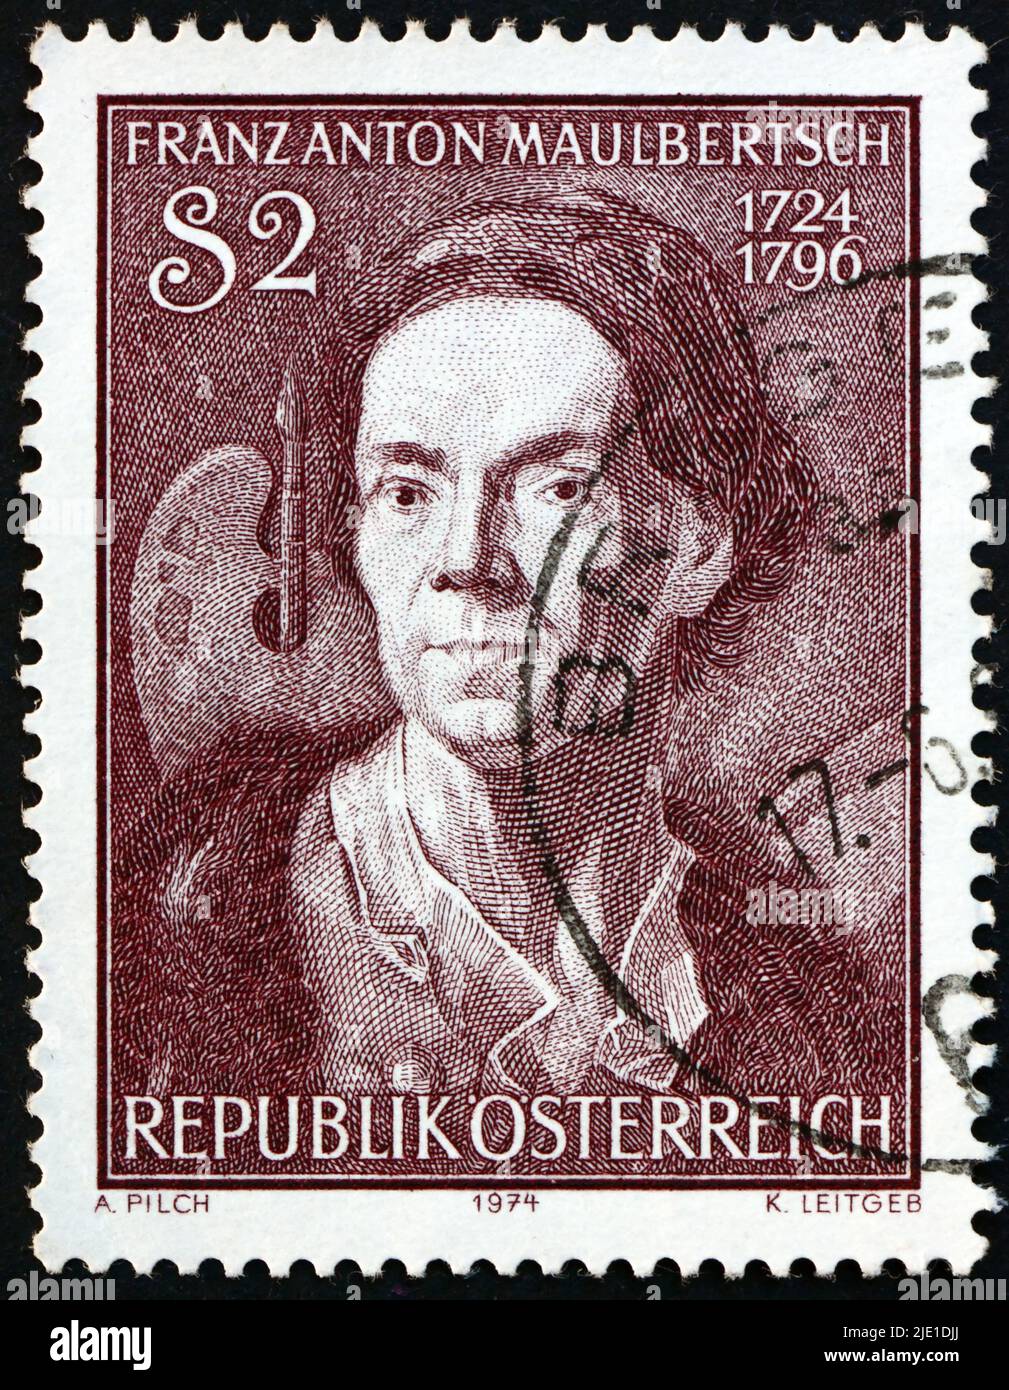 ÖSTERREICH - UM 1974: Eine in Österreich gedruckte Briefmarke zeigt Selbstporträt, Gemälde von Franz Anton Maulbertsch (1724-1796), österreichischer Maler, um 1974 Stockfoto